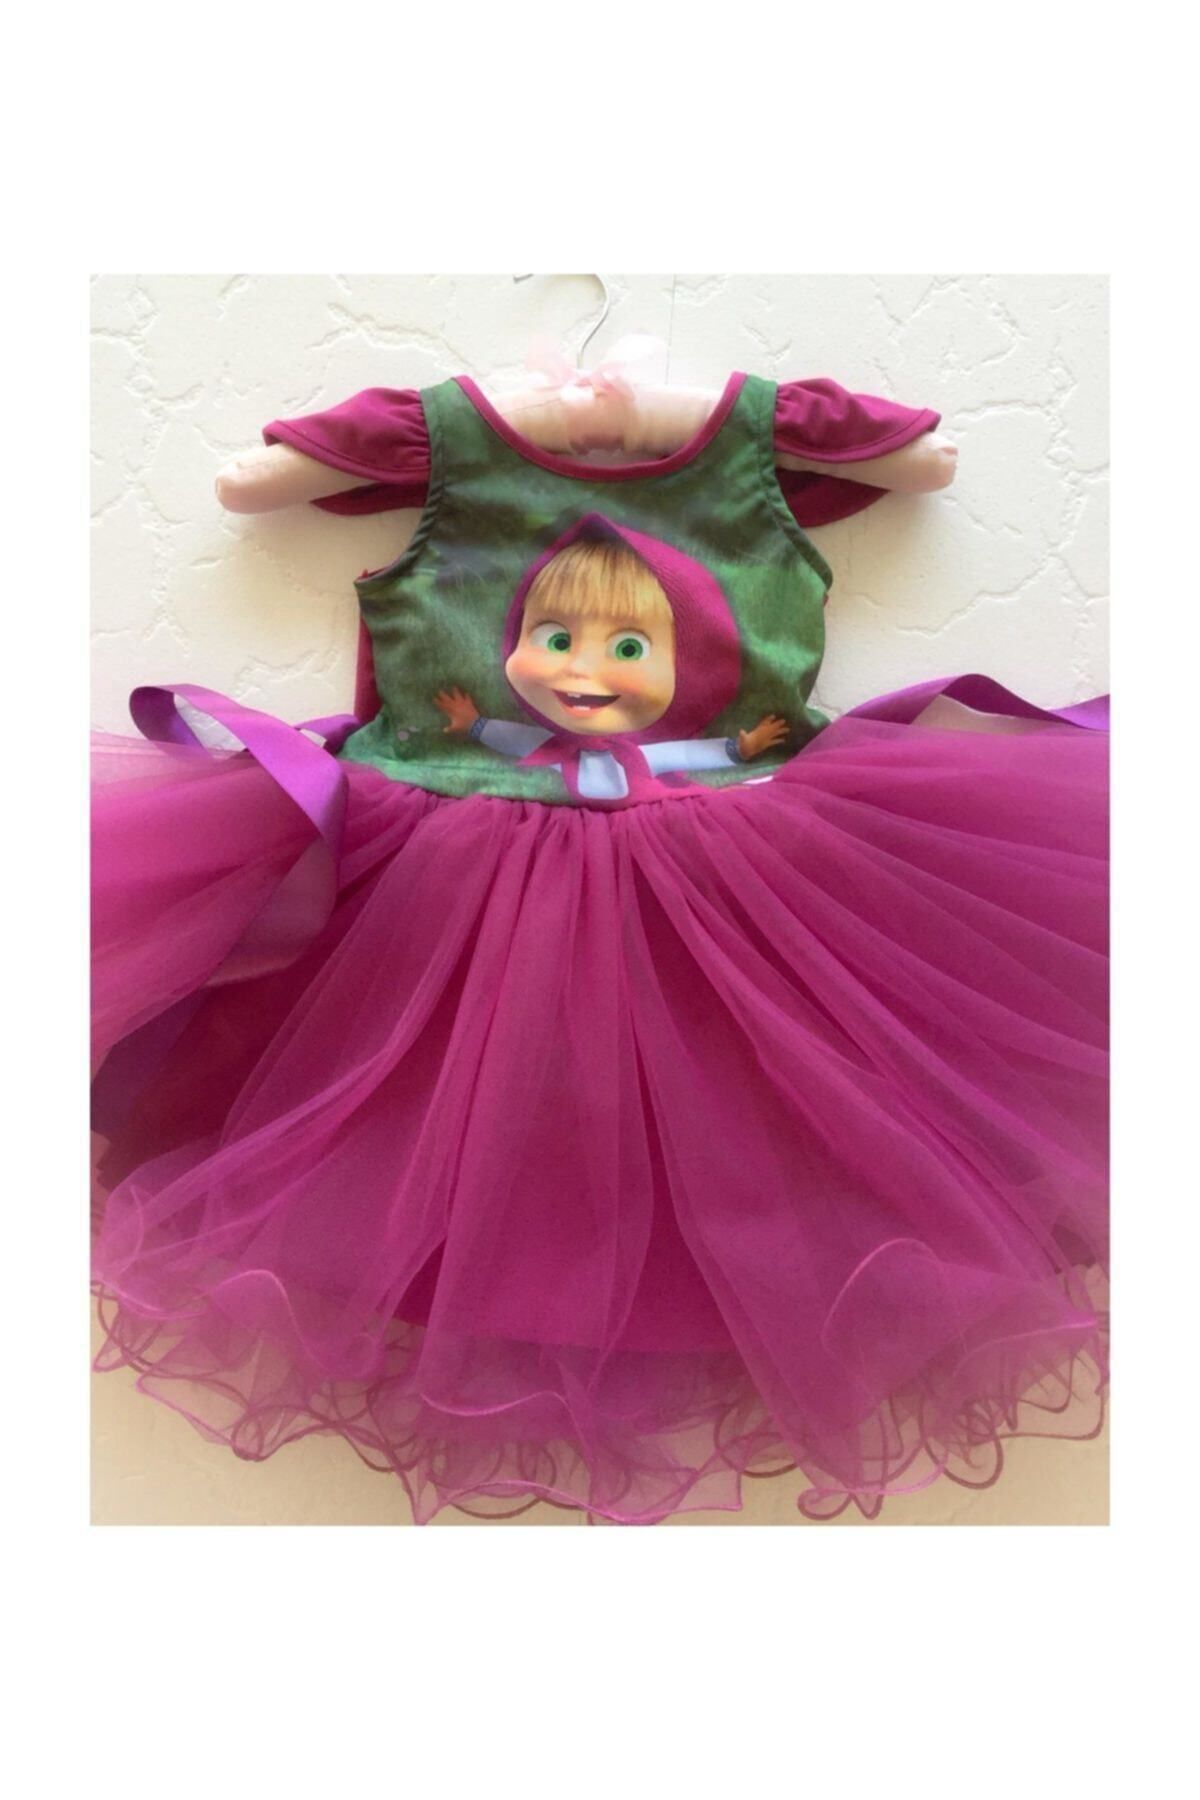 Lady Lou Prenses Maşa Kostümü, Kız Çocuk Elbise Masha Ve Koca Ayı Kabarık Tütülü Doğum Günü Kostüm